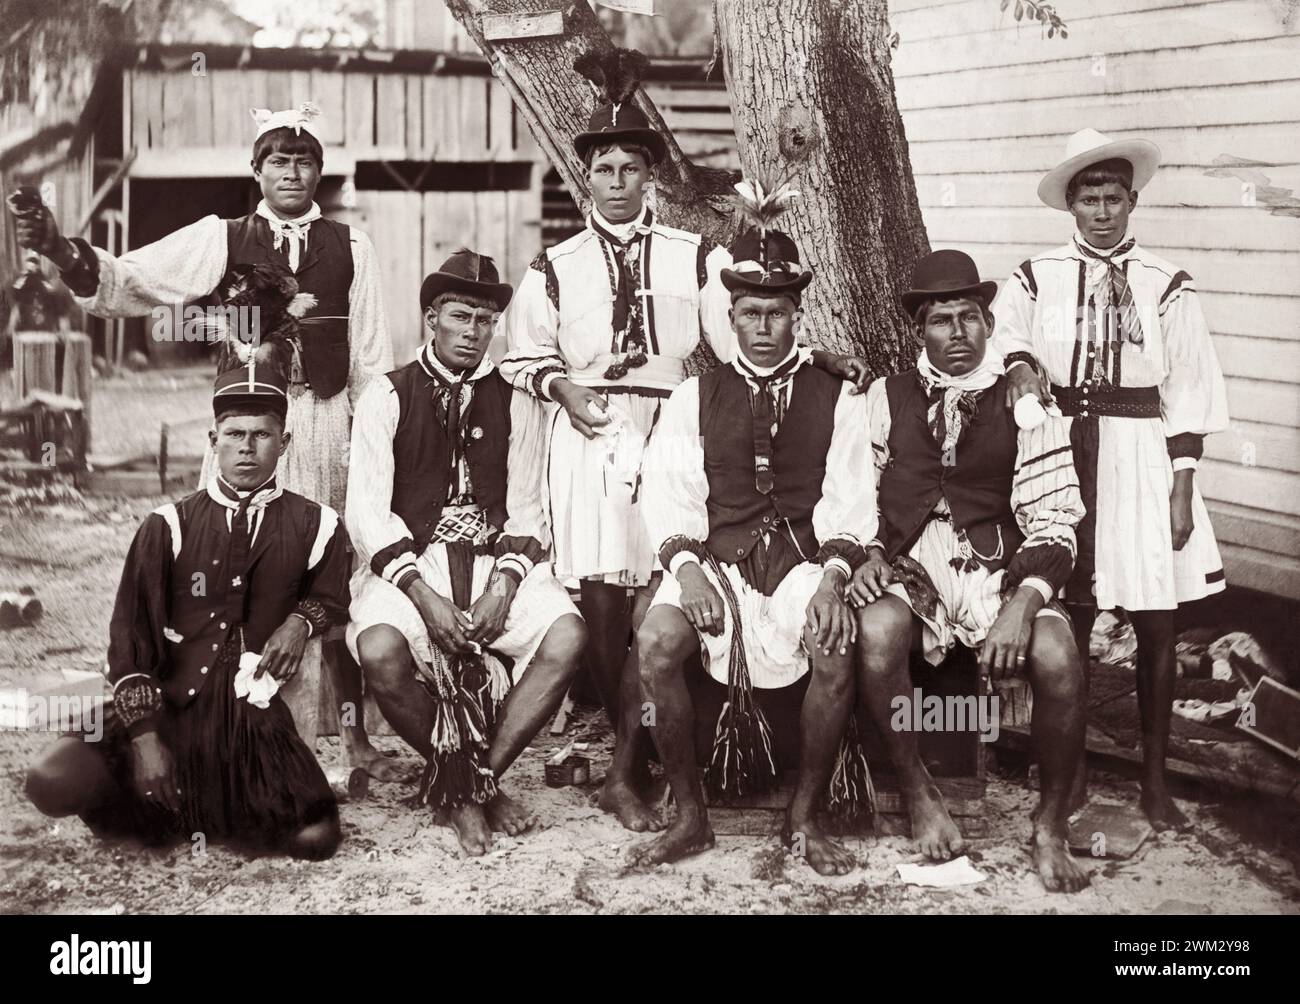 Gruppenporträt der Seminolen in einheimischer Kleidung, 1896. Stockfoto